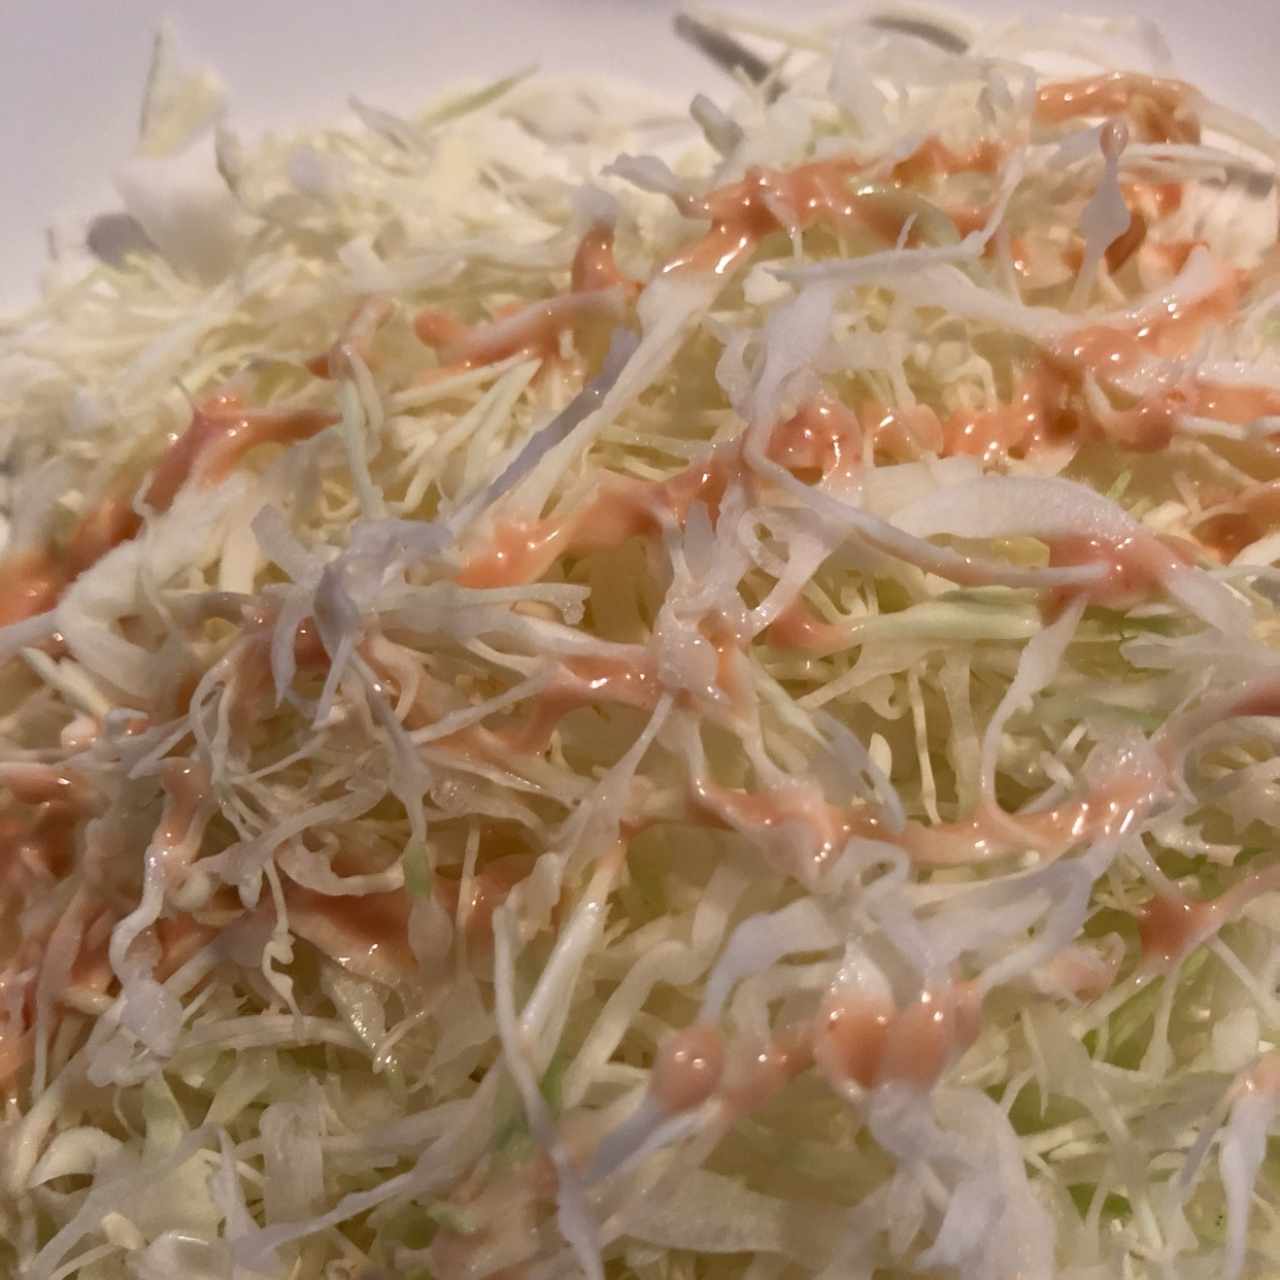 sirven ensalada (repollo) en ligar de pan  con kimchi 